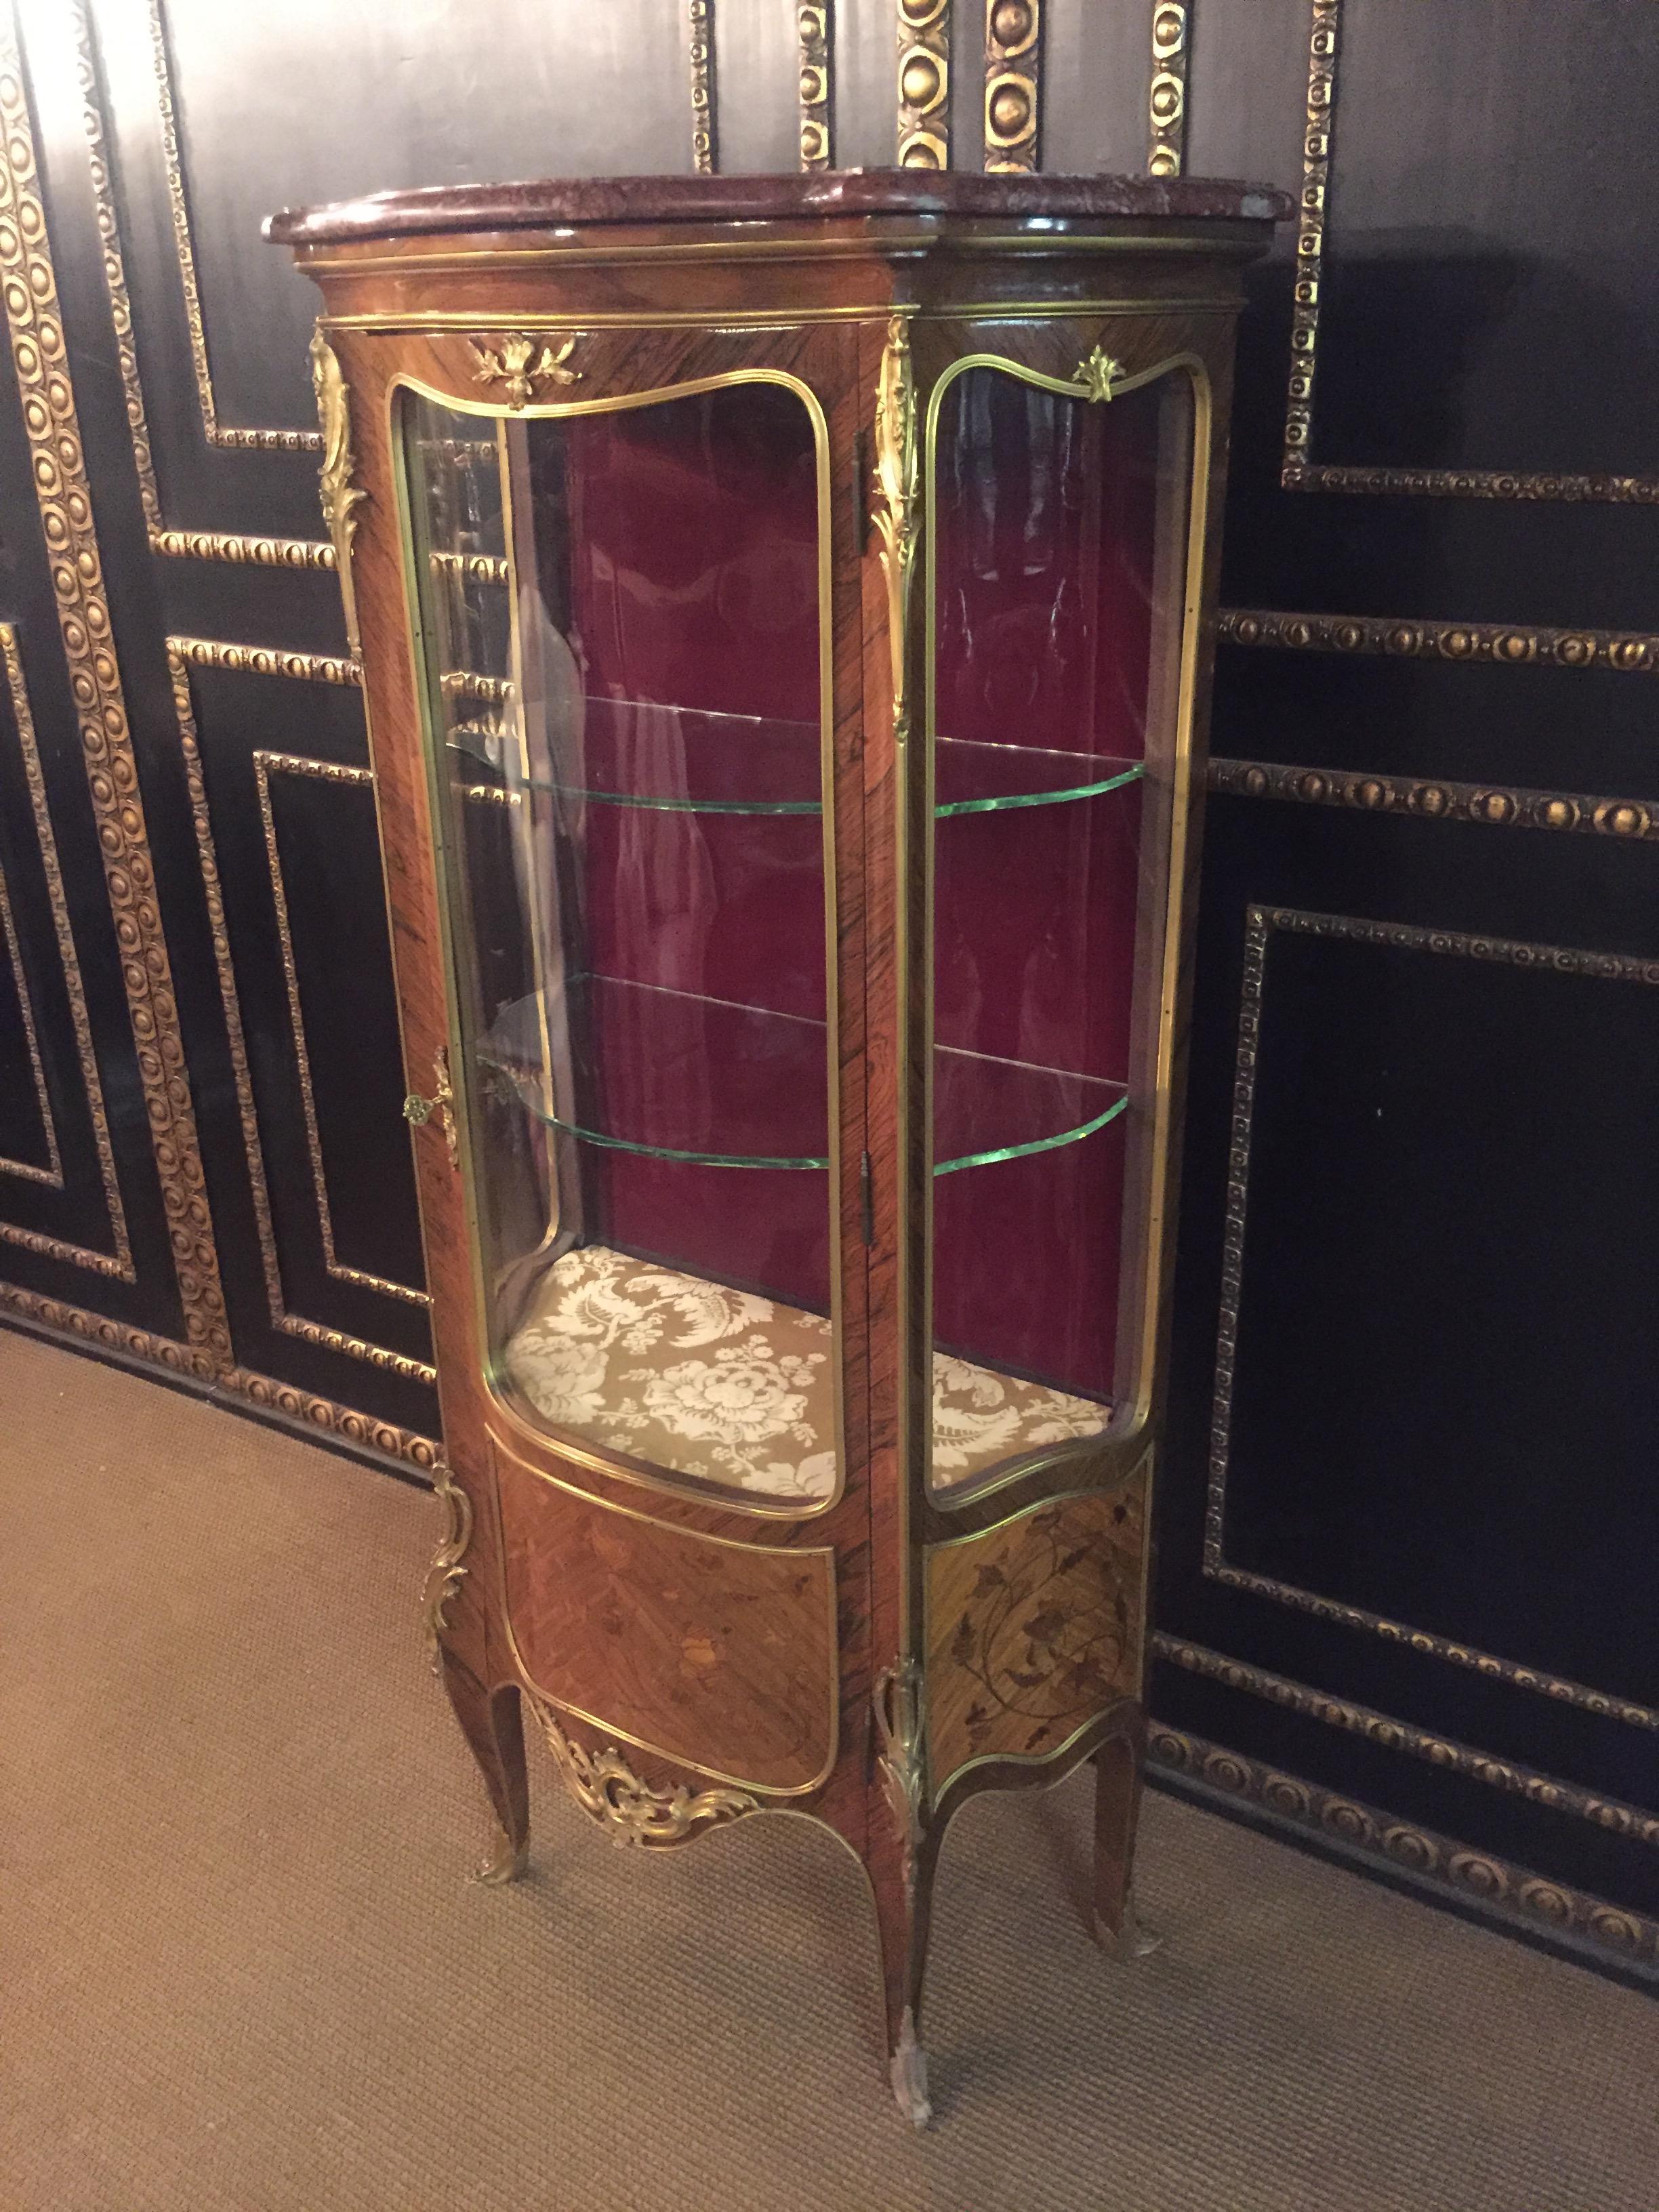 Vitrine im Stil Louis XV Napoleon III Paris, um 1850-1880 Bois-Satiné-Furnier, umlaufend flächendeckendes Spiegelfurnier auf massivem Weichholz. Hochrechteckiger, eintüriger, gewölbter und dreiseitig verglaster Korpus auf hohen, schrägen und